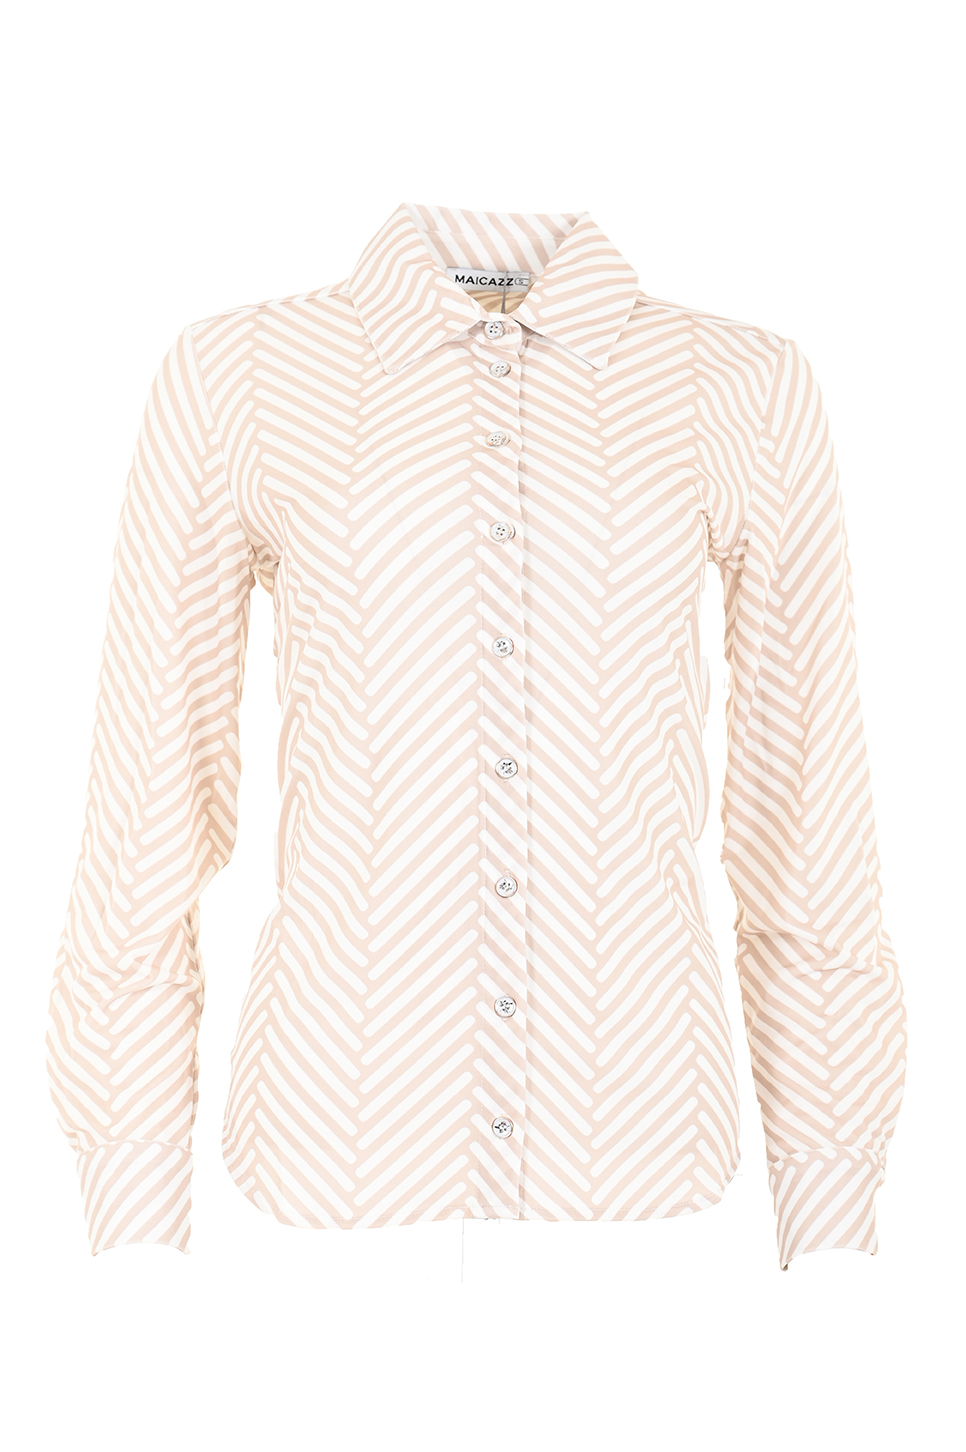 Garbi is een getailleerde blouse door de coupenaden op het achterpand. De manchetten bevatten Ã©Ã©n knoopje. De blouse heeft een knoopsluiting en lange mouwen. Hij is te verkrijgen in twee prints. 